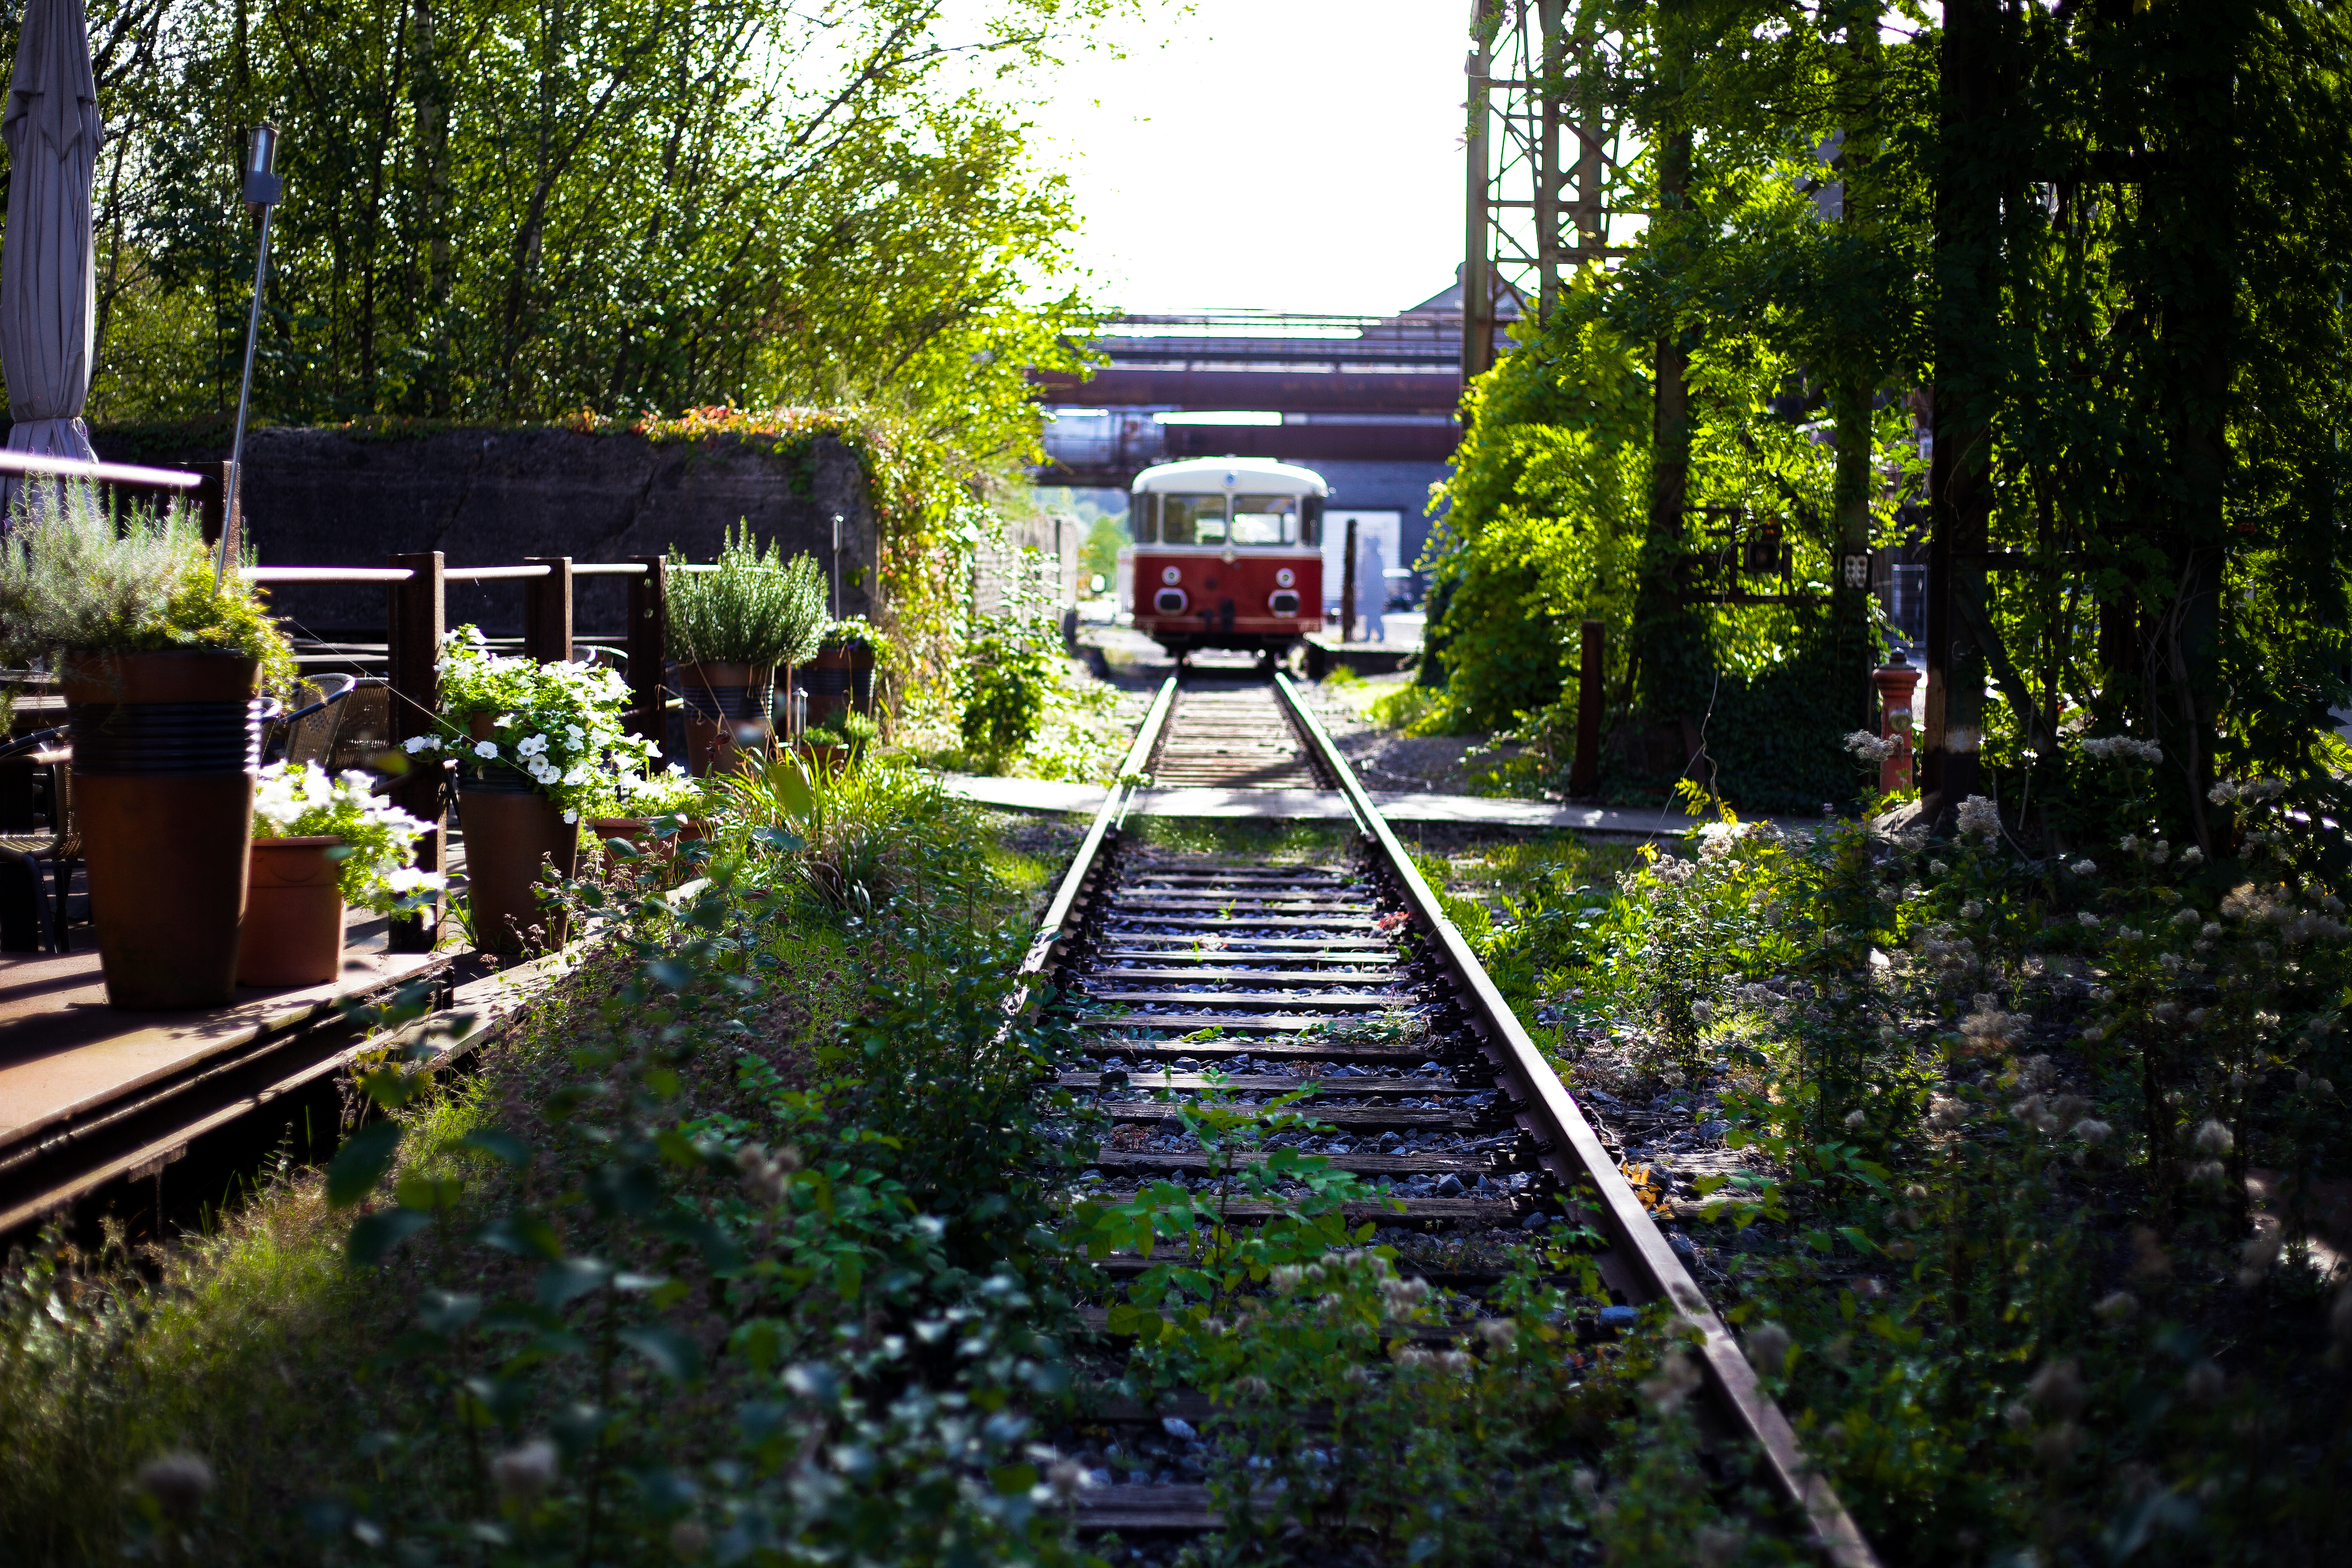 Ein alter Eisenbahnwaggon fährt auf den Gleisen durch die begrünte Außenanlage des LWL-Industriemuseums Henrichshütte in Hattingen. 